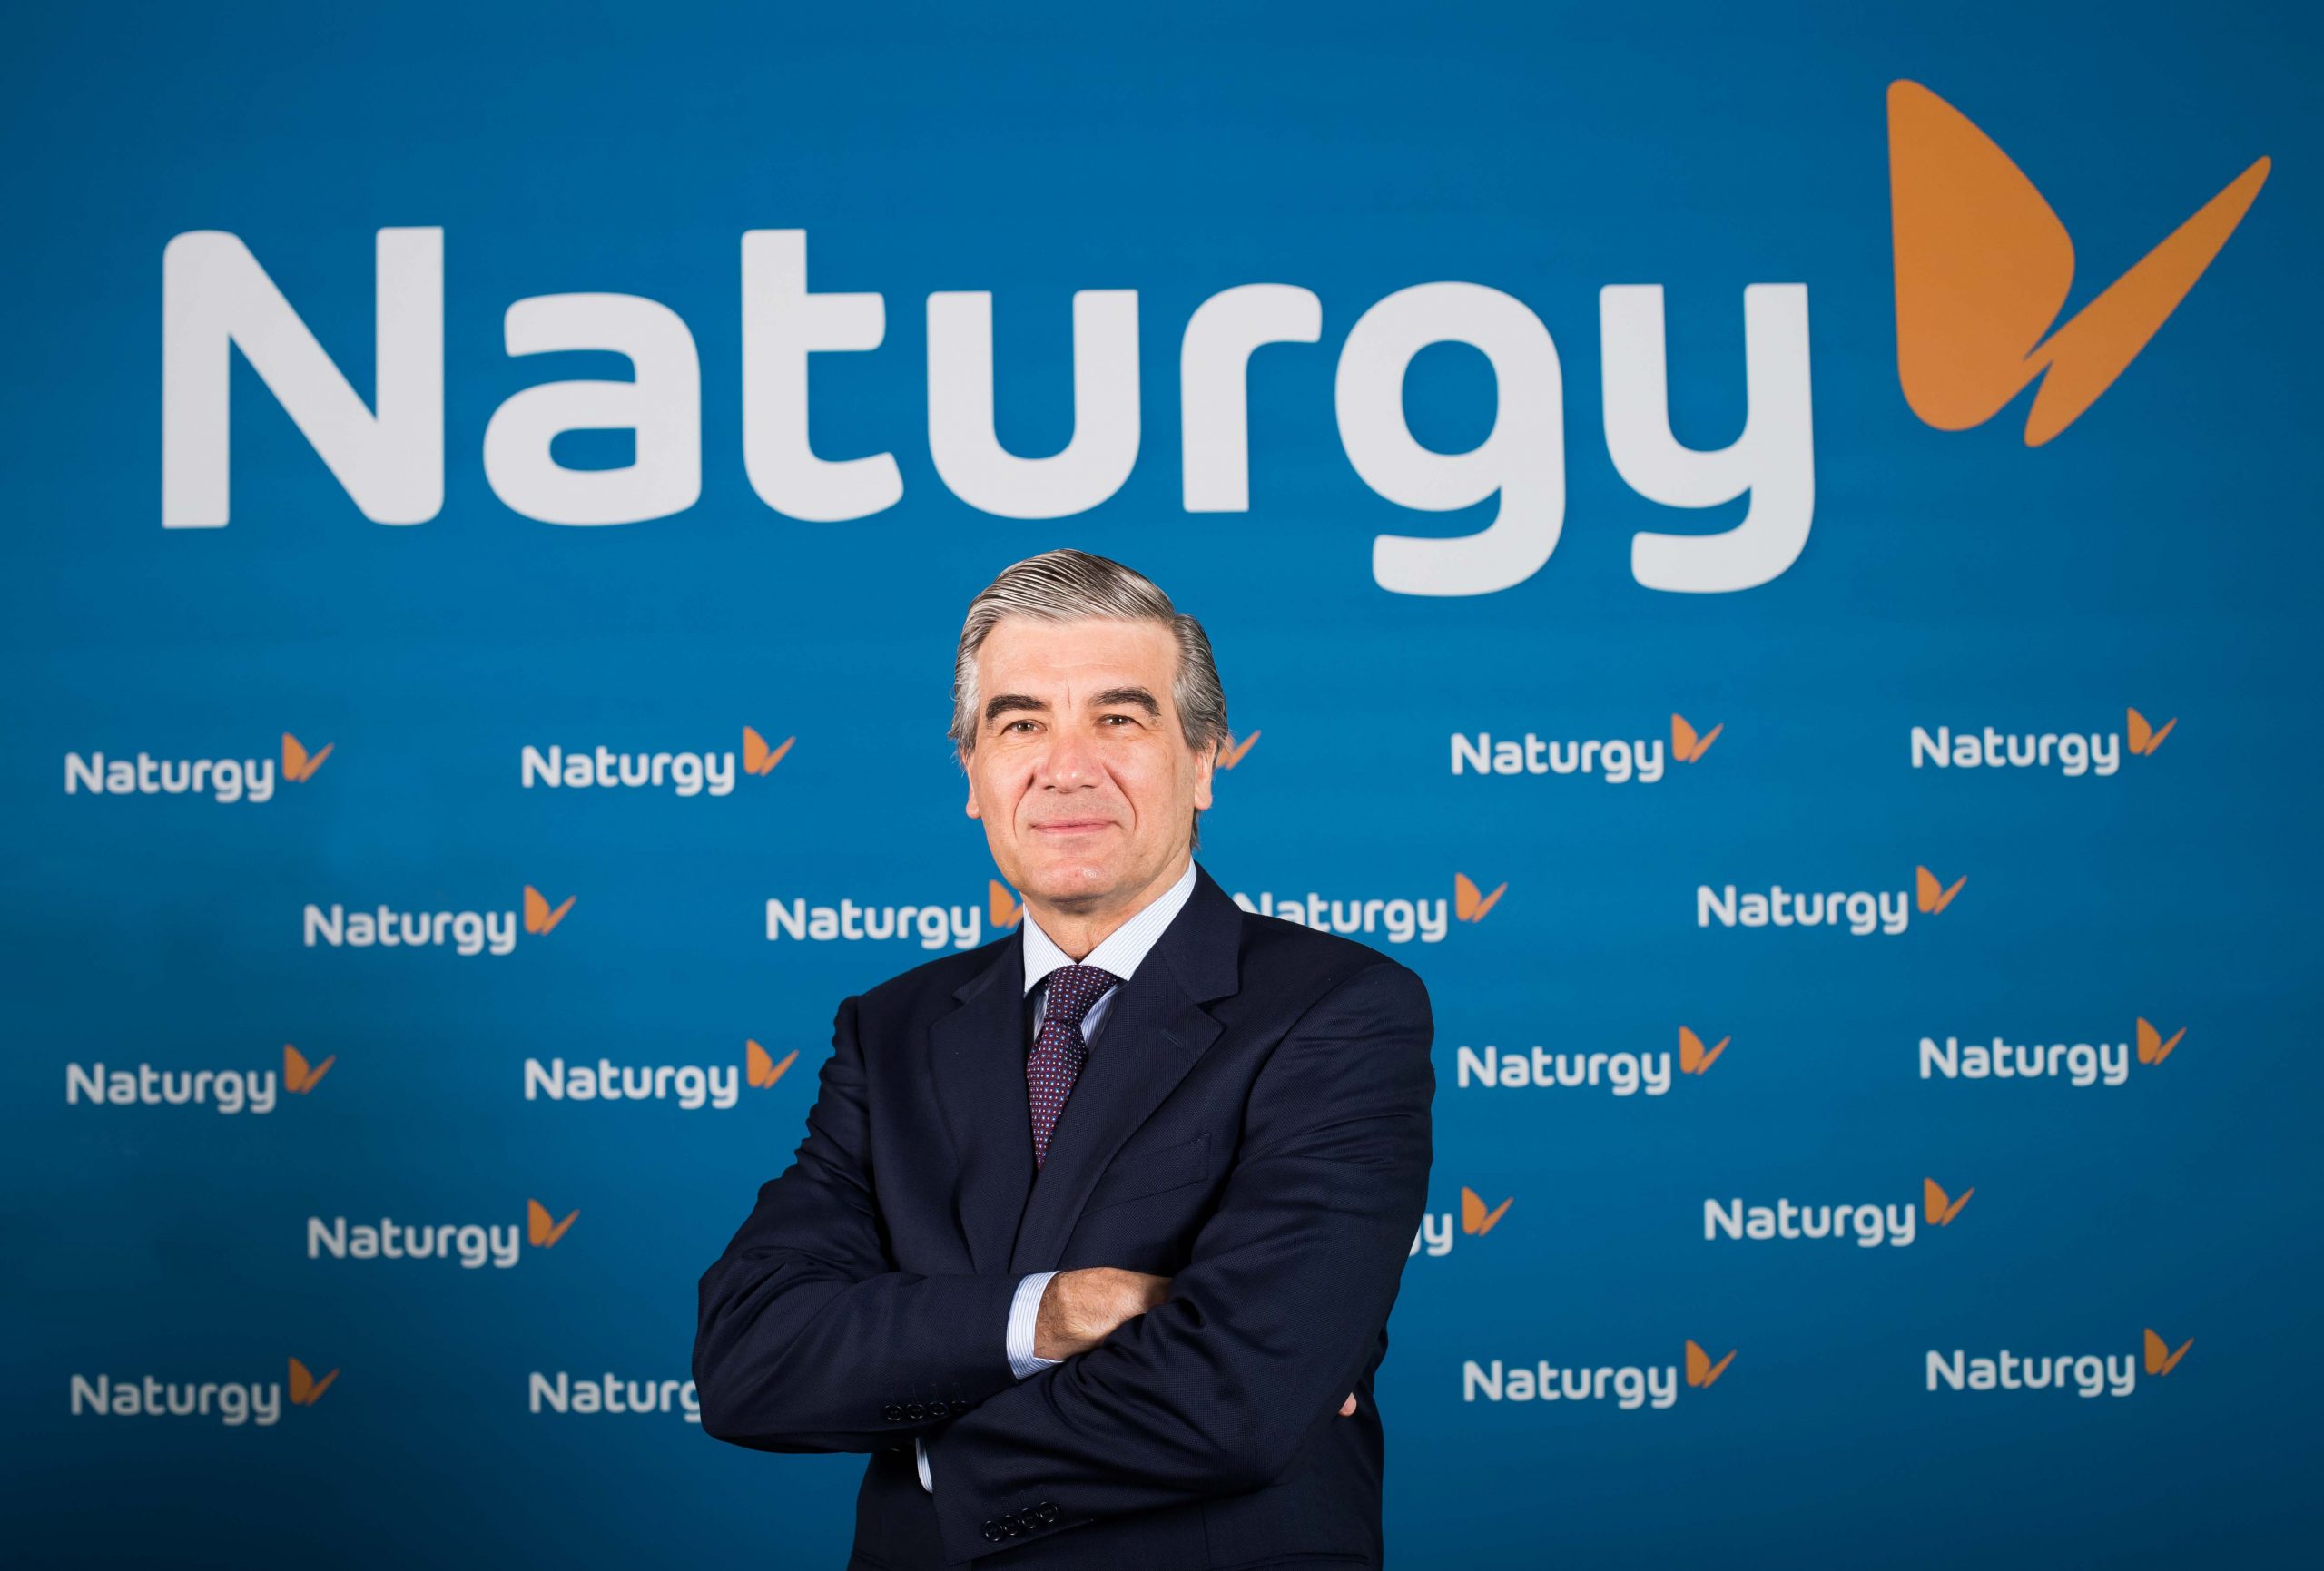 ‘Naturgy’ sustituye a ‘Gas Natural Fenosa’ como marca  de la compañía energética para afrontar los nuevos retos